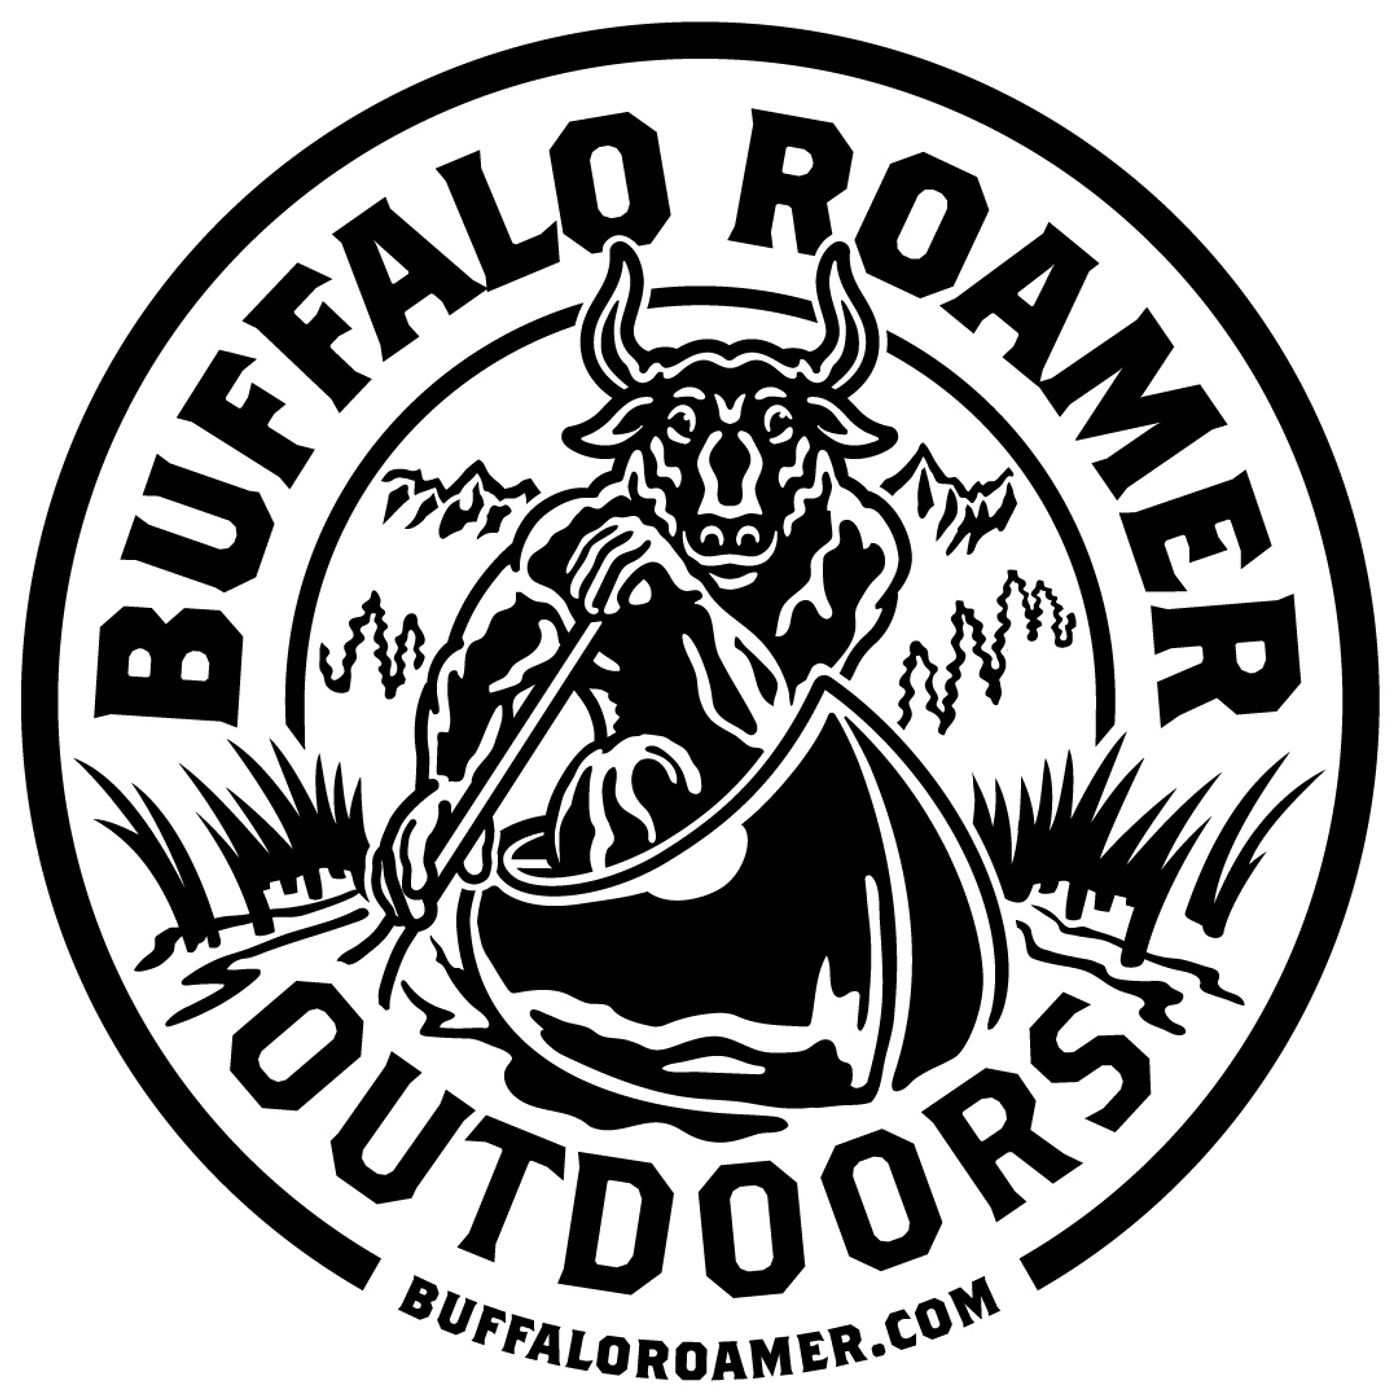 Buffalo Roamer Podcast – For Those Who Seek Adventure